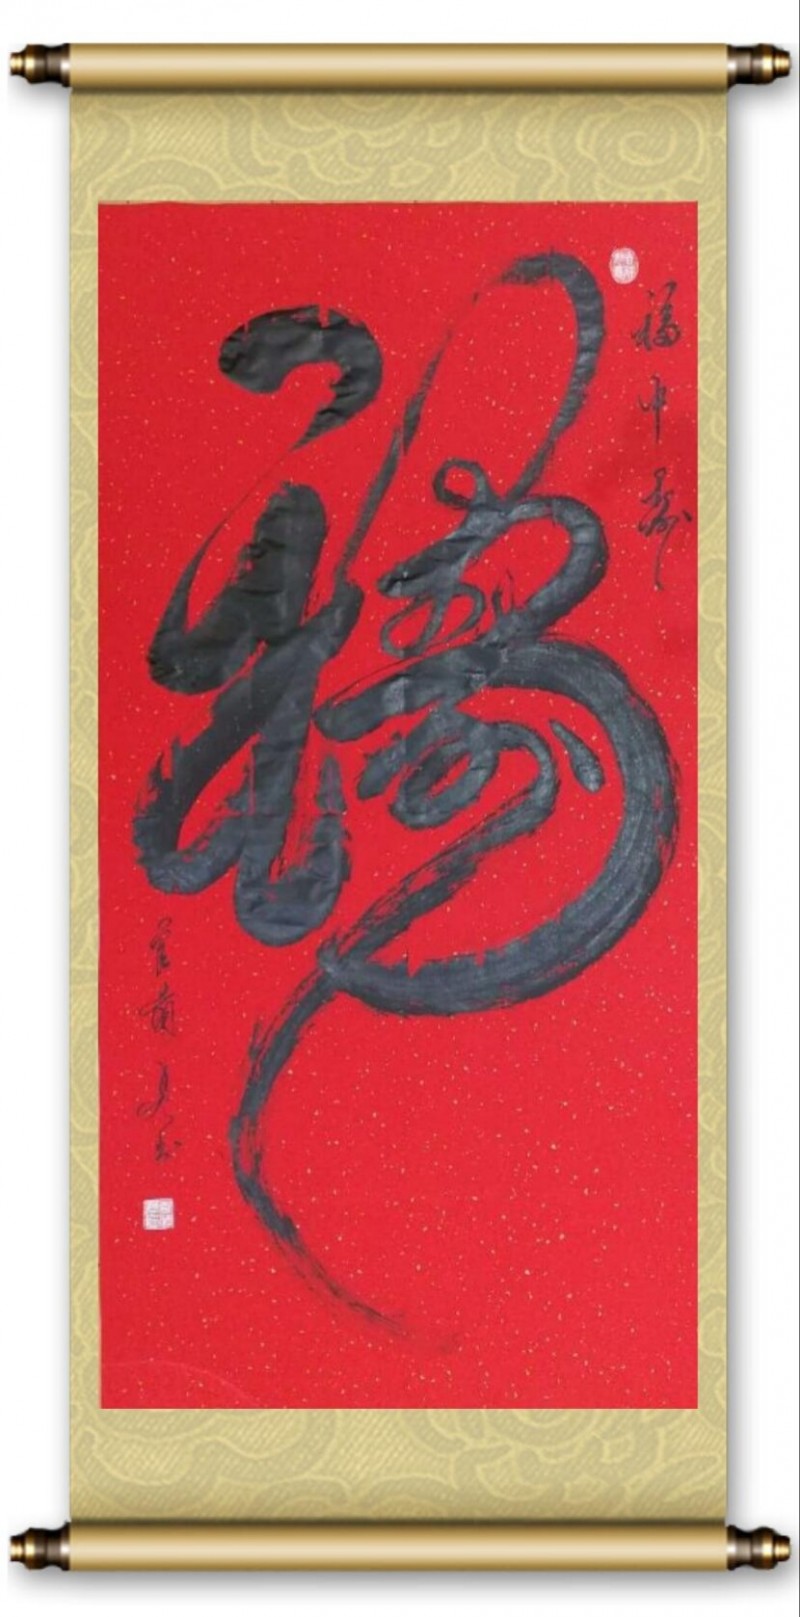 官兰贞——中宣盛世国际书画院会员、著名书画家